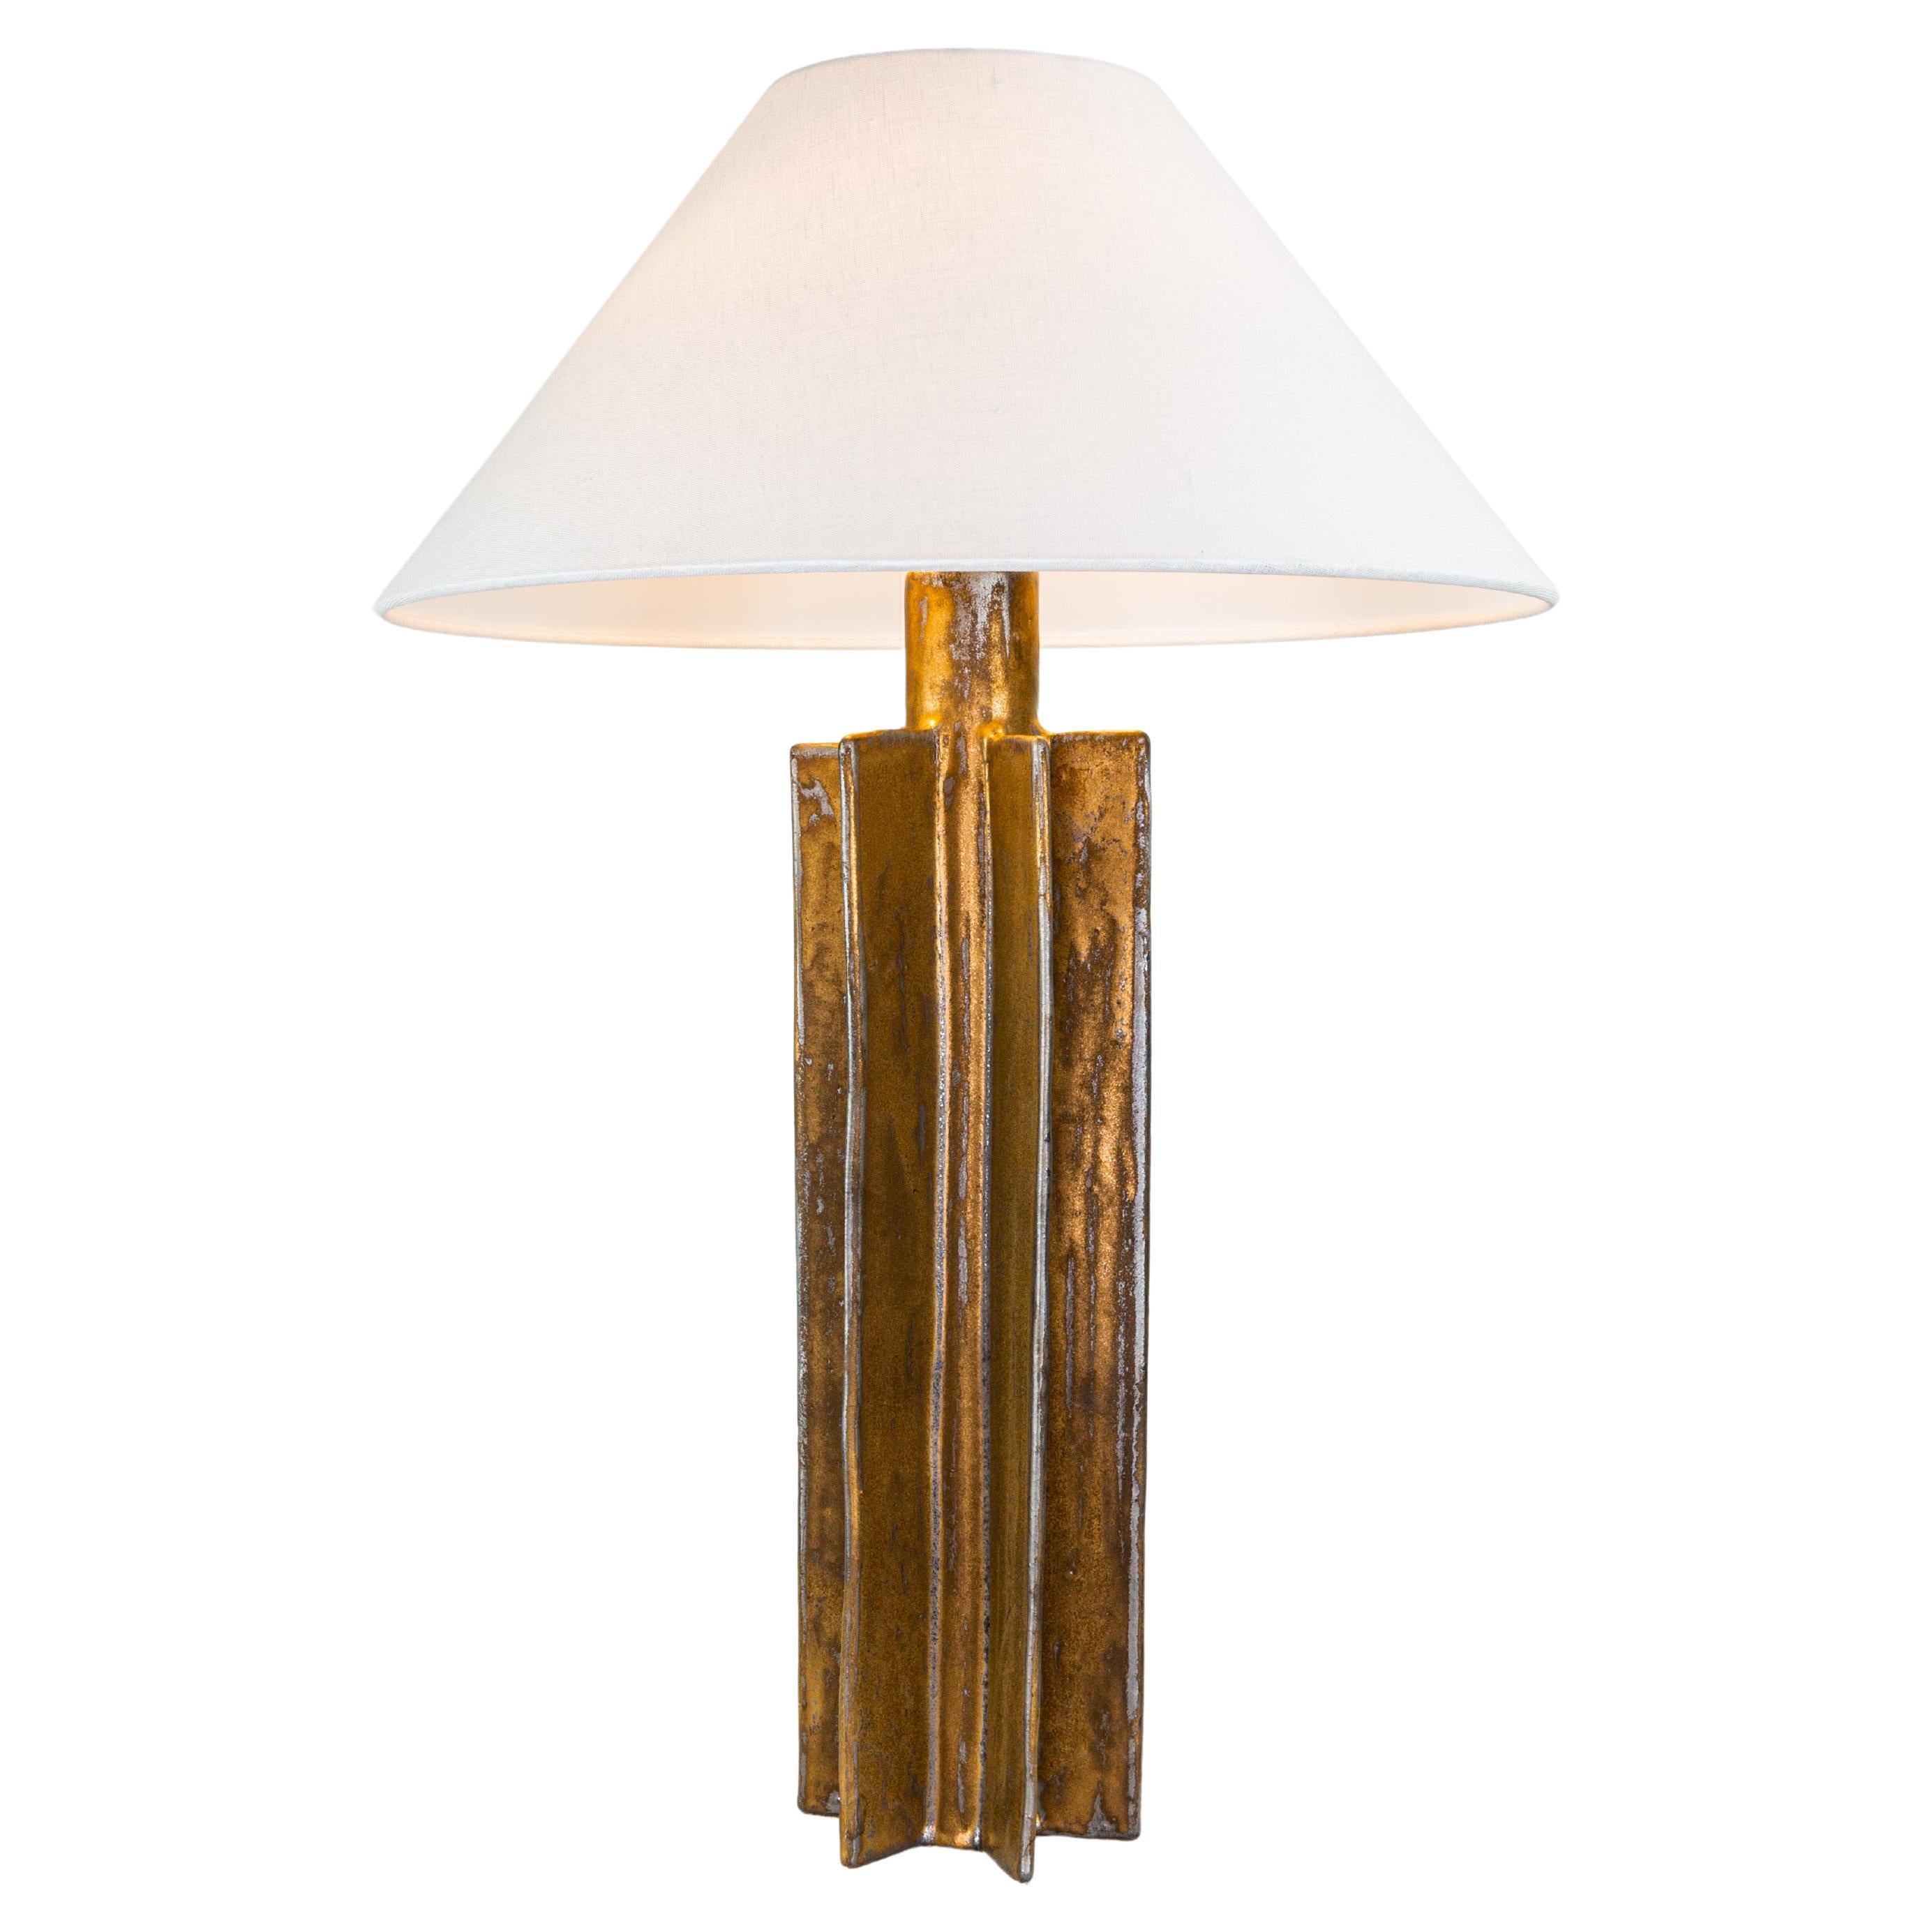 Lampe de bureau FIN, finition glaçure dorée, lampe en céramique fabriquée par Kalin Asenov